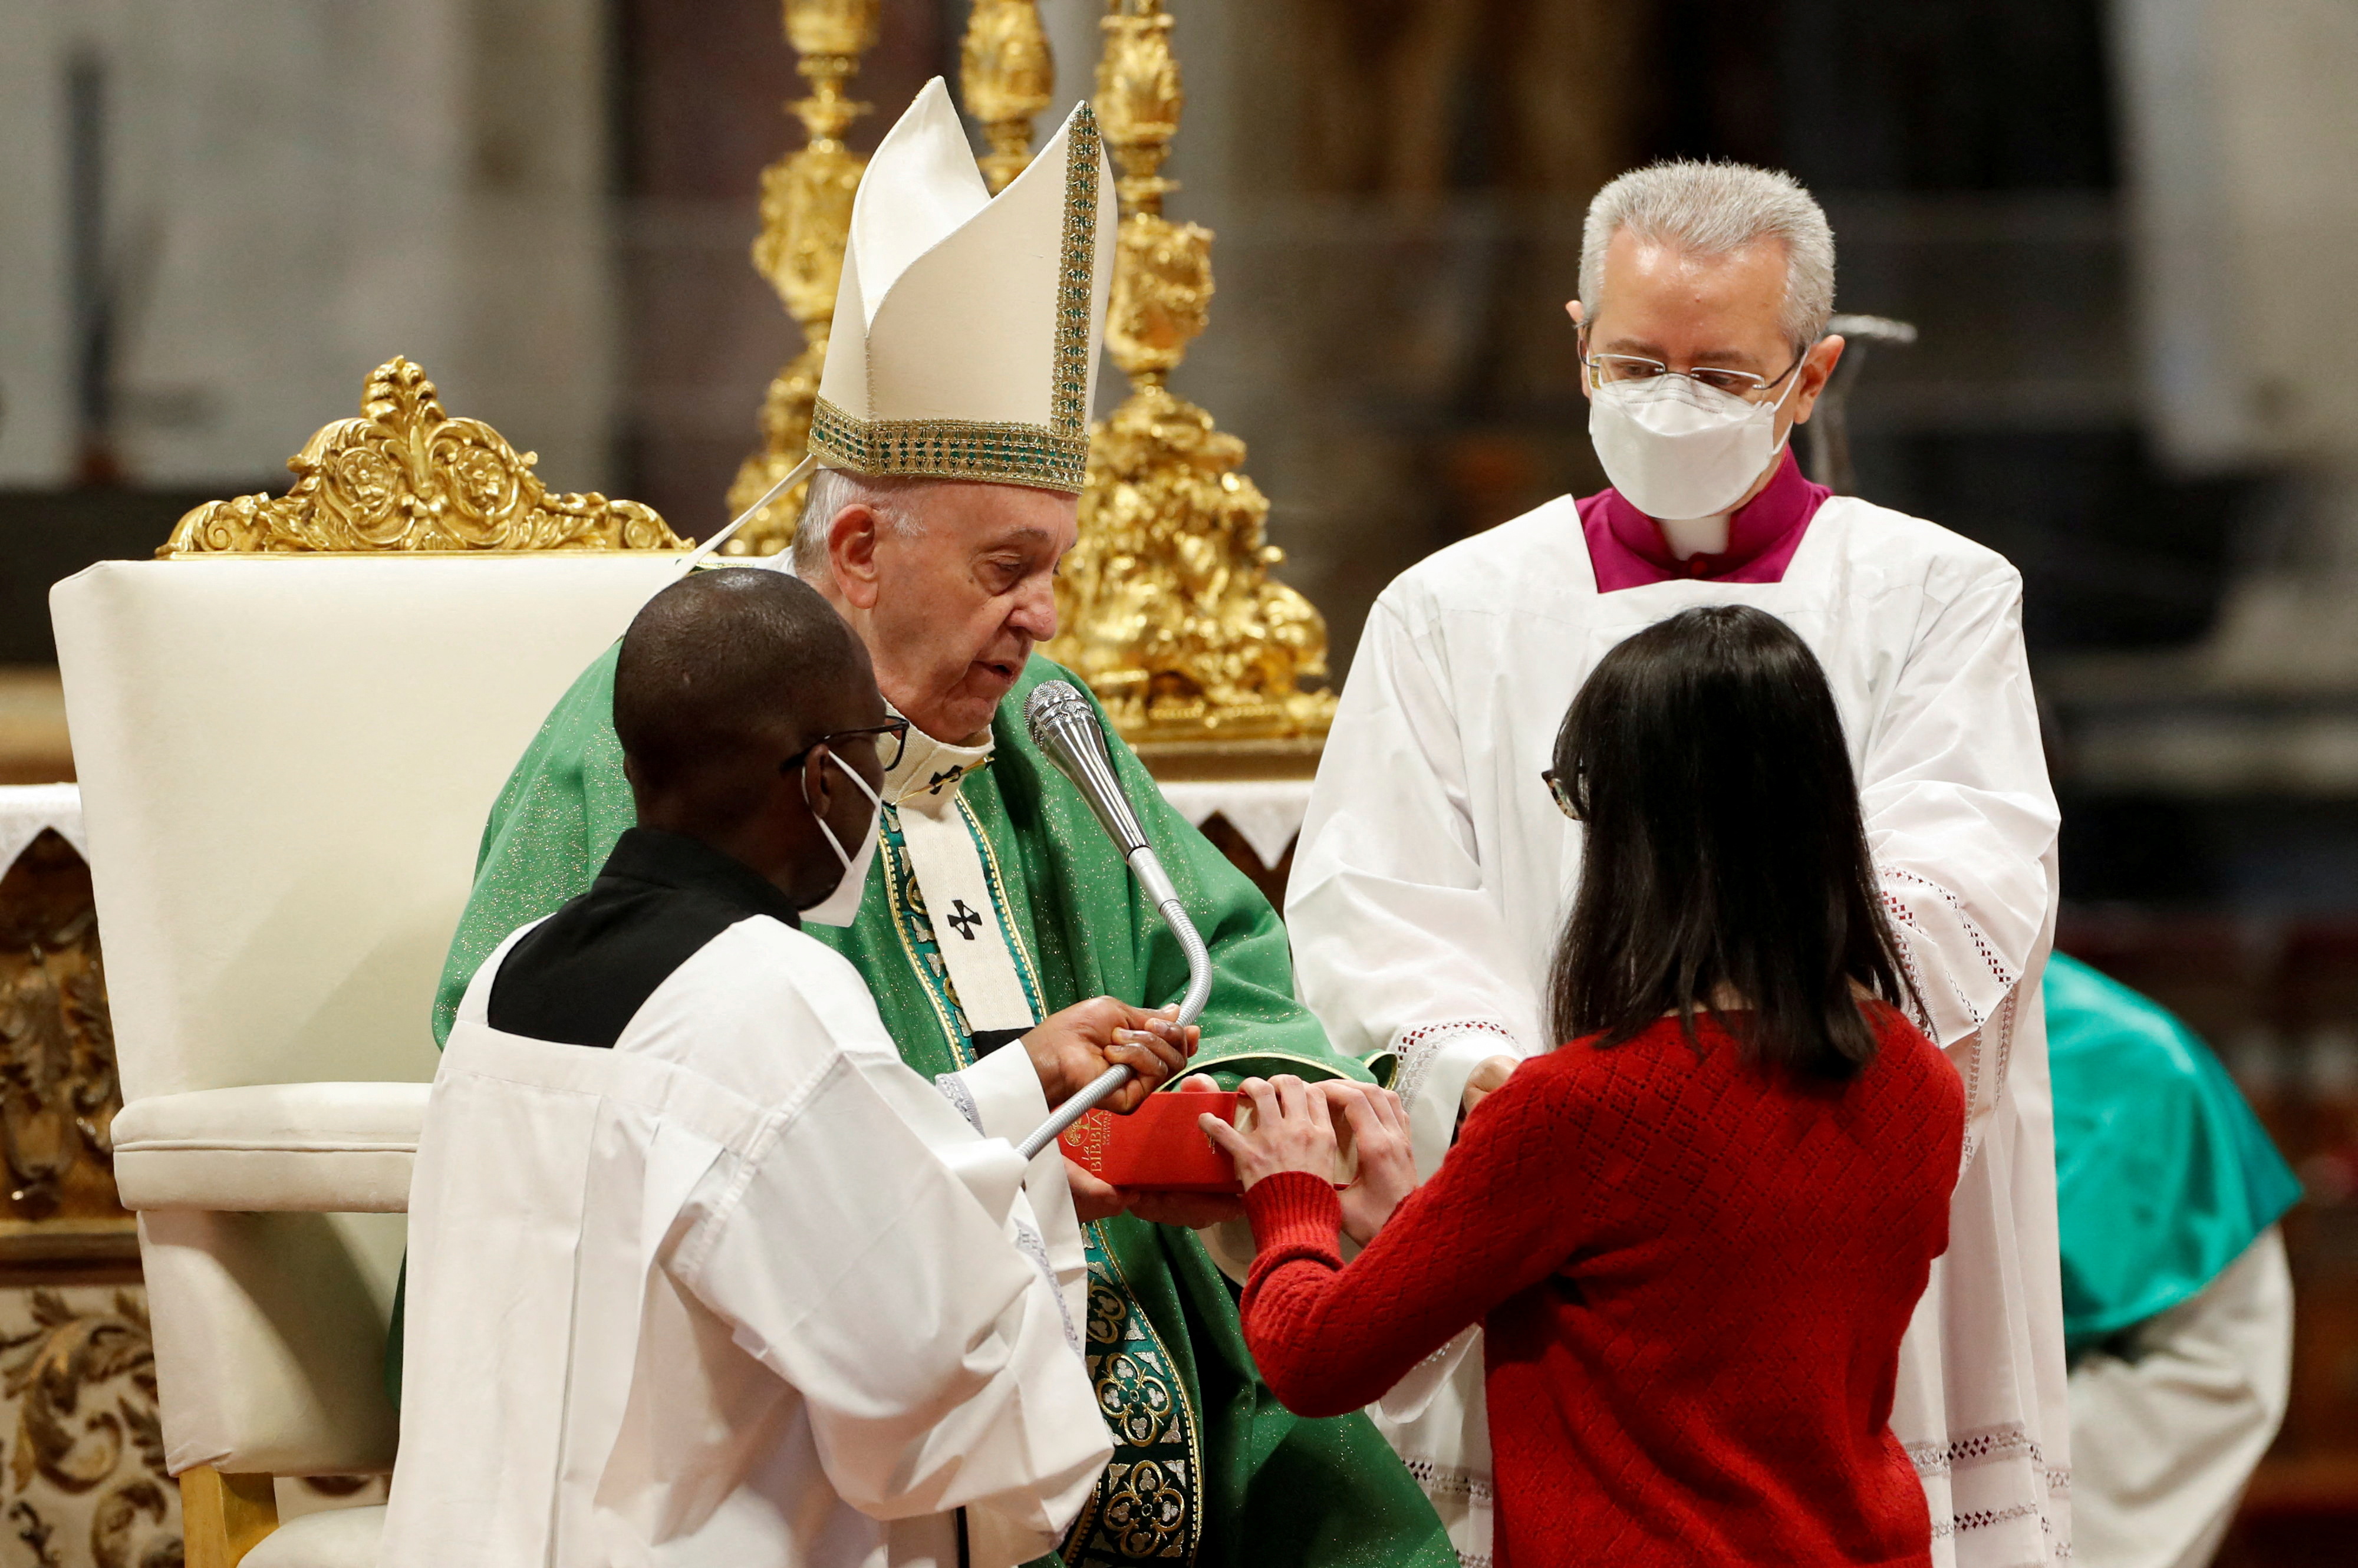 Una lectoar recibe un evangelio de manos del Papa Francisco durante la Santa Misa en la Basílica de San Pedro del Vaticano, el 23 de enero de 2022. REUTERS/Remo Casilli